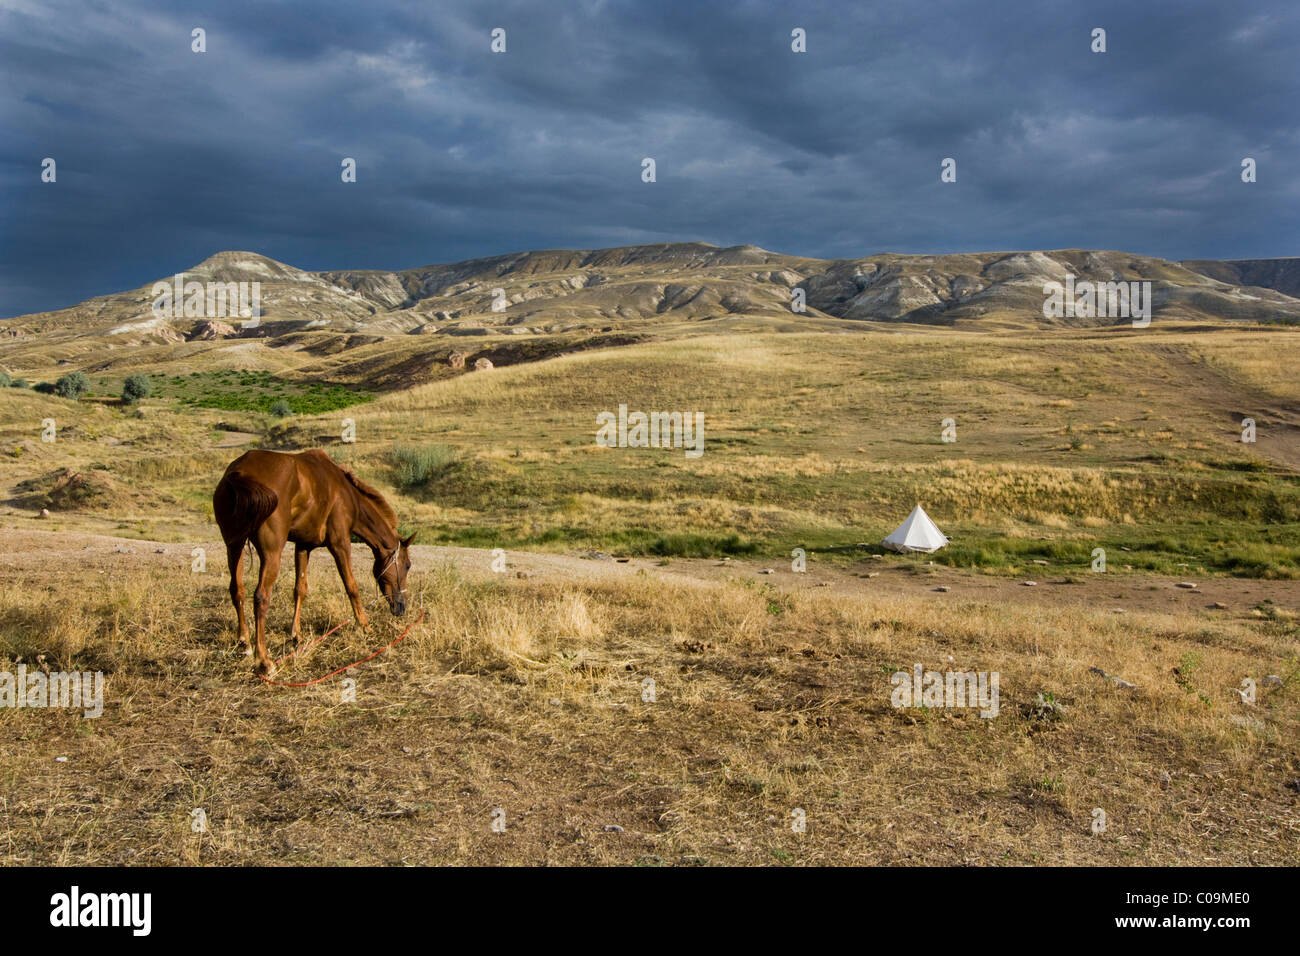 Il cavallo in atmosfera tempestoso nel paesaggio di tufo, Cappadocia, Anatolia centrale, Turchia, Asia Foto Stock